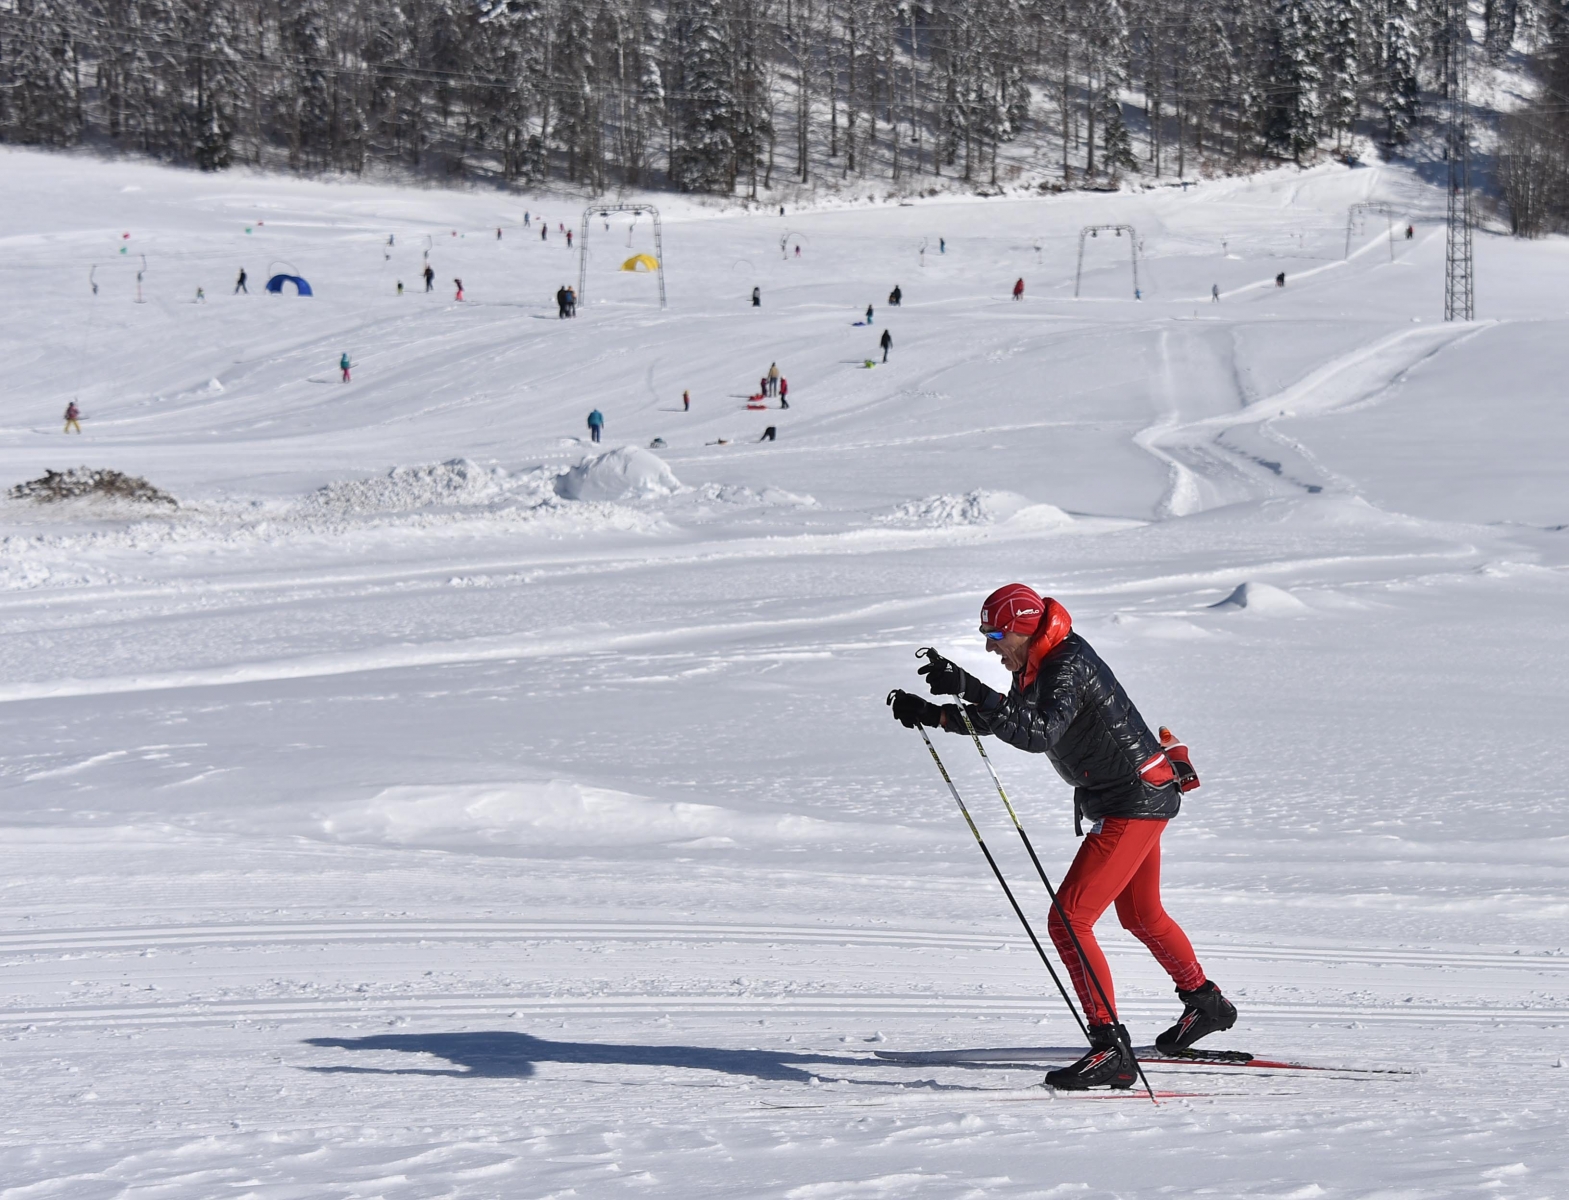 Magnifiques conditions pour skier a La Corbatiere



La Corbatiere 9 mars 2016

Photo R Leuenberger HIVER